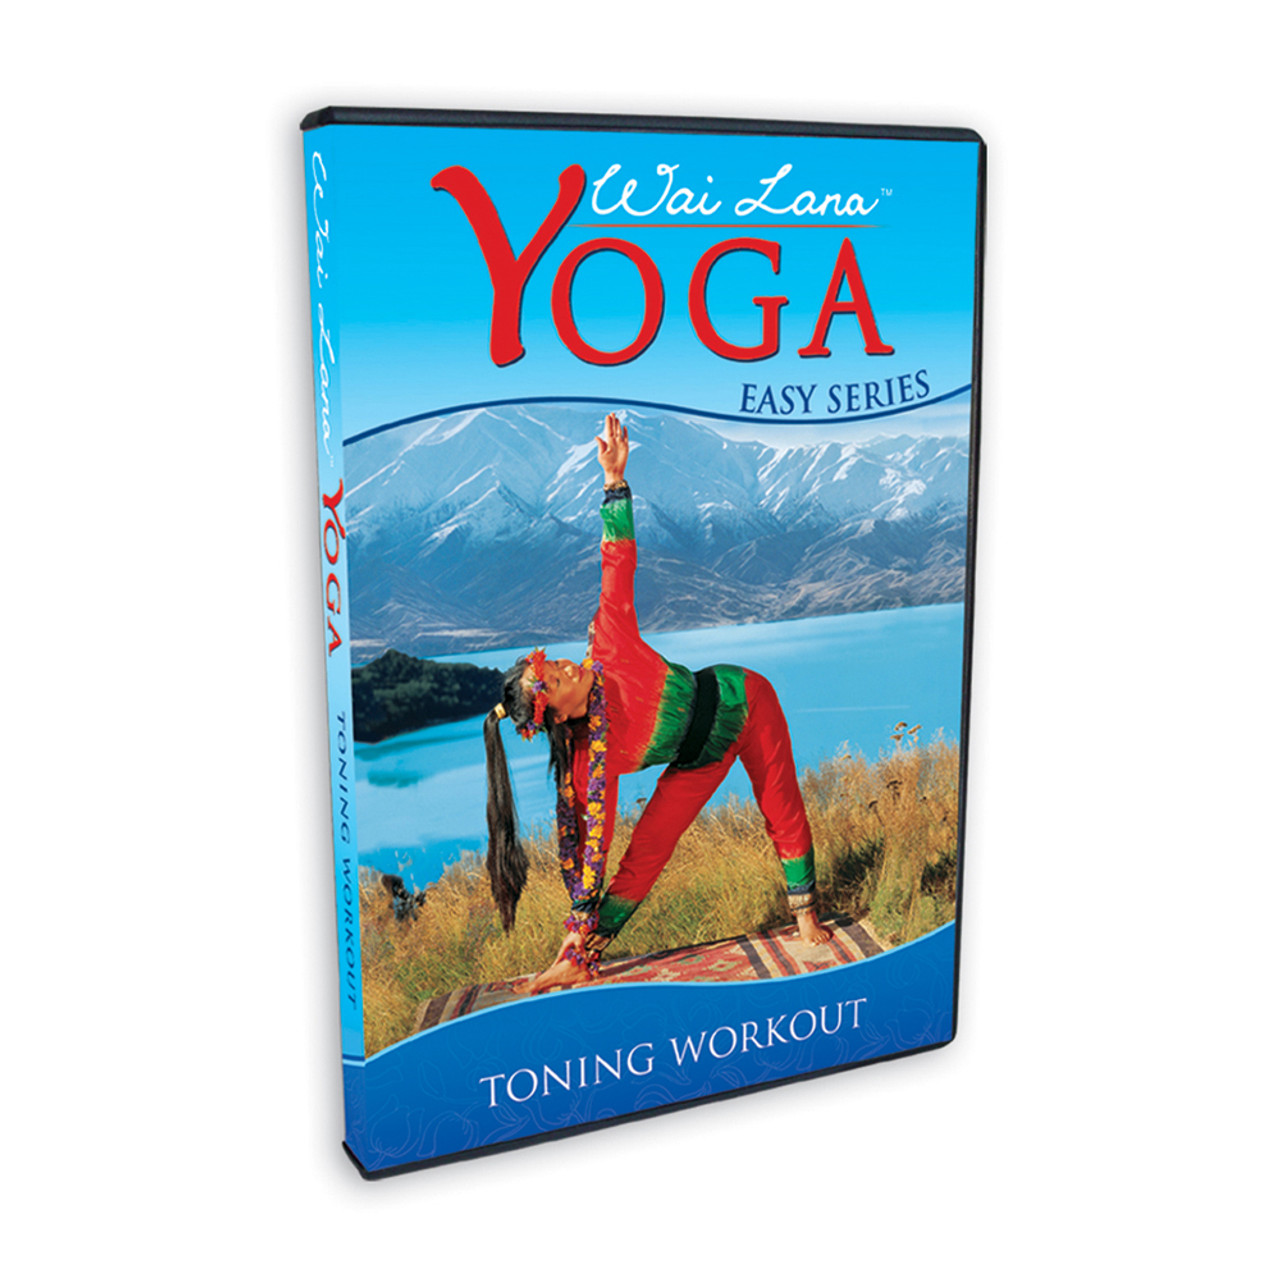 Yoga DVDs & Workout DVDs